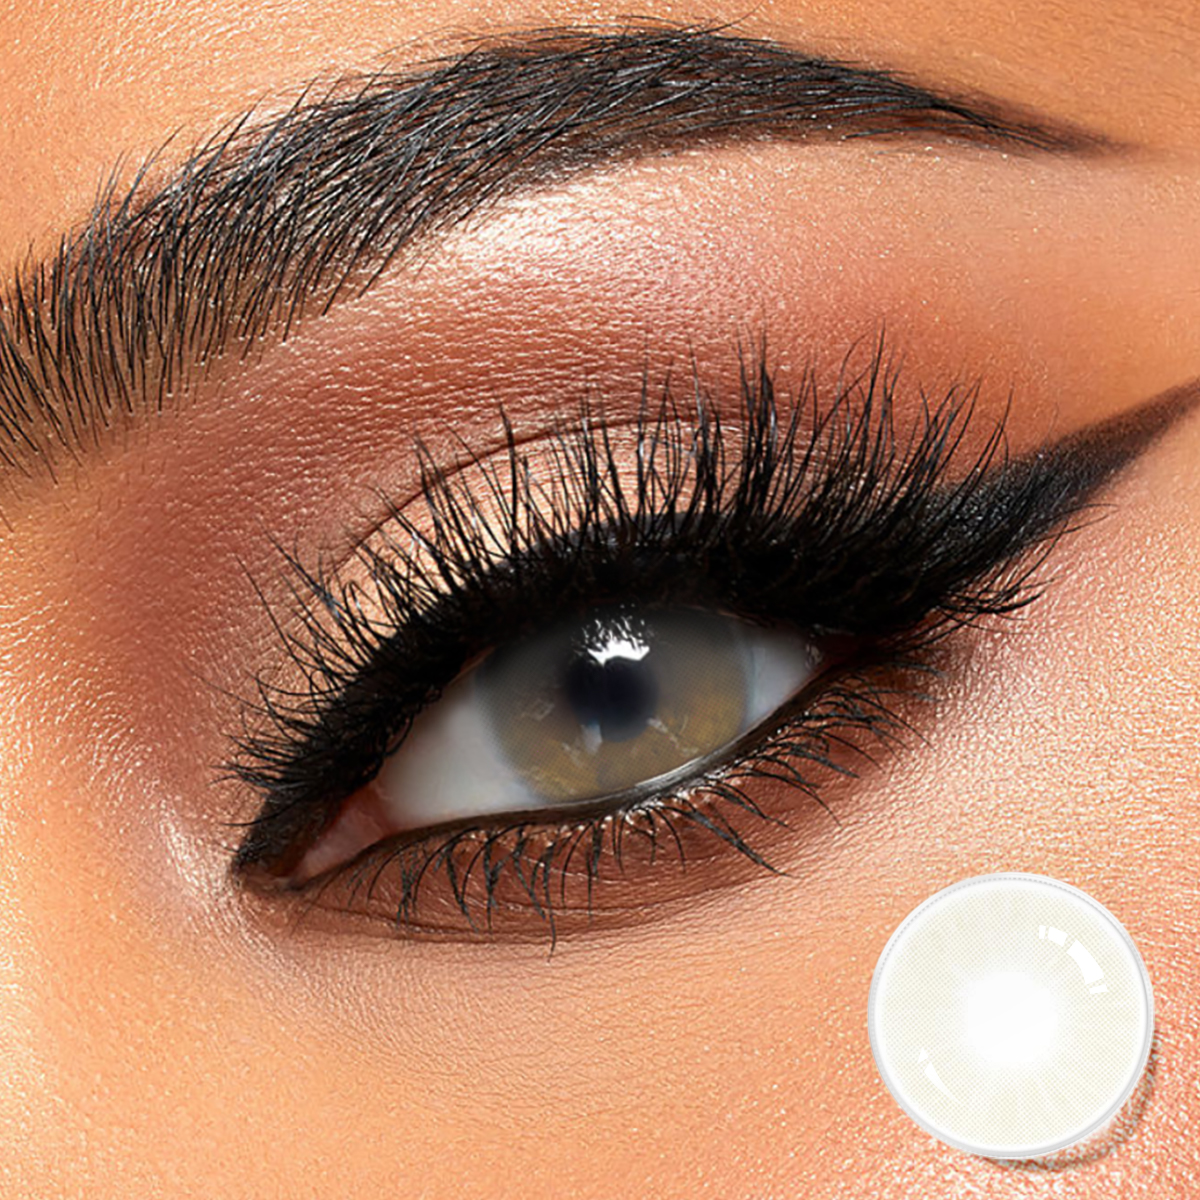 kontakt lensler Doğal gri toptan bella tarzı kontakt lensler göz lensleri oem gücü olabilir